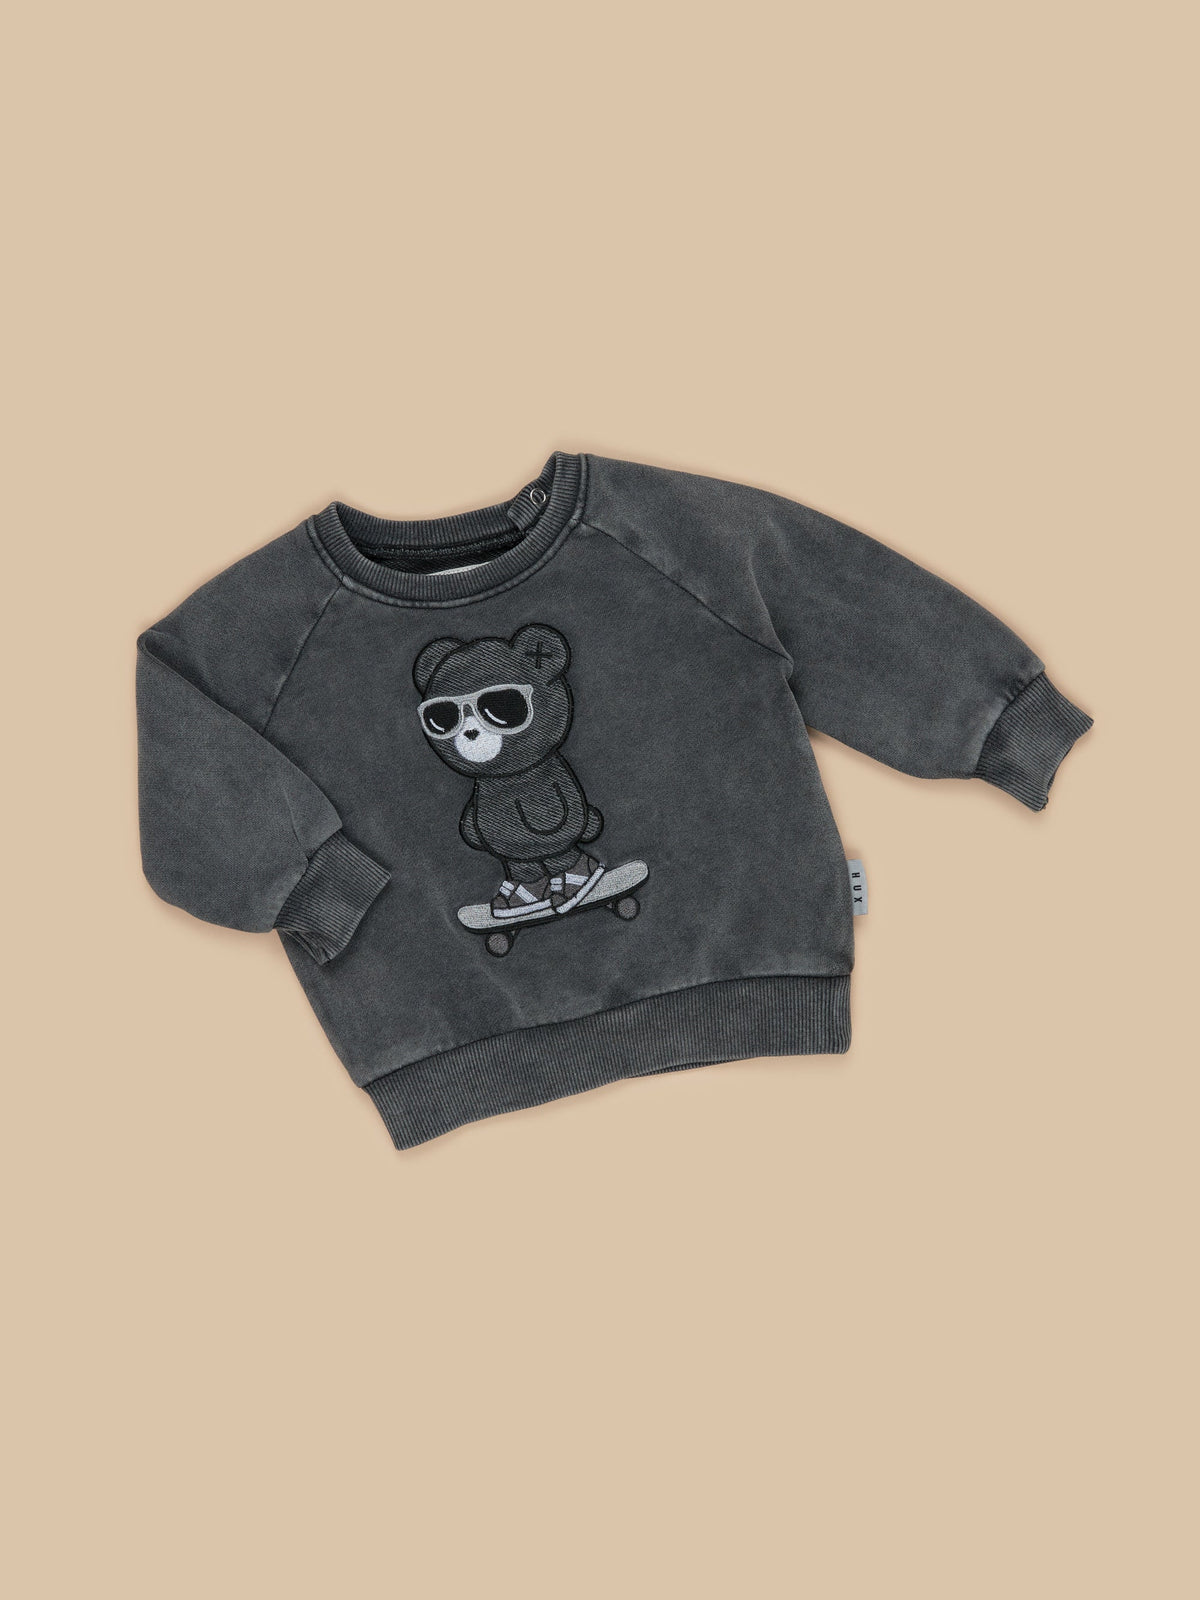 Skater Bear Sweatshirt- Soft Black